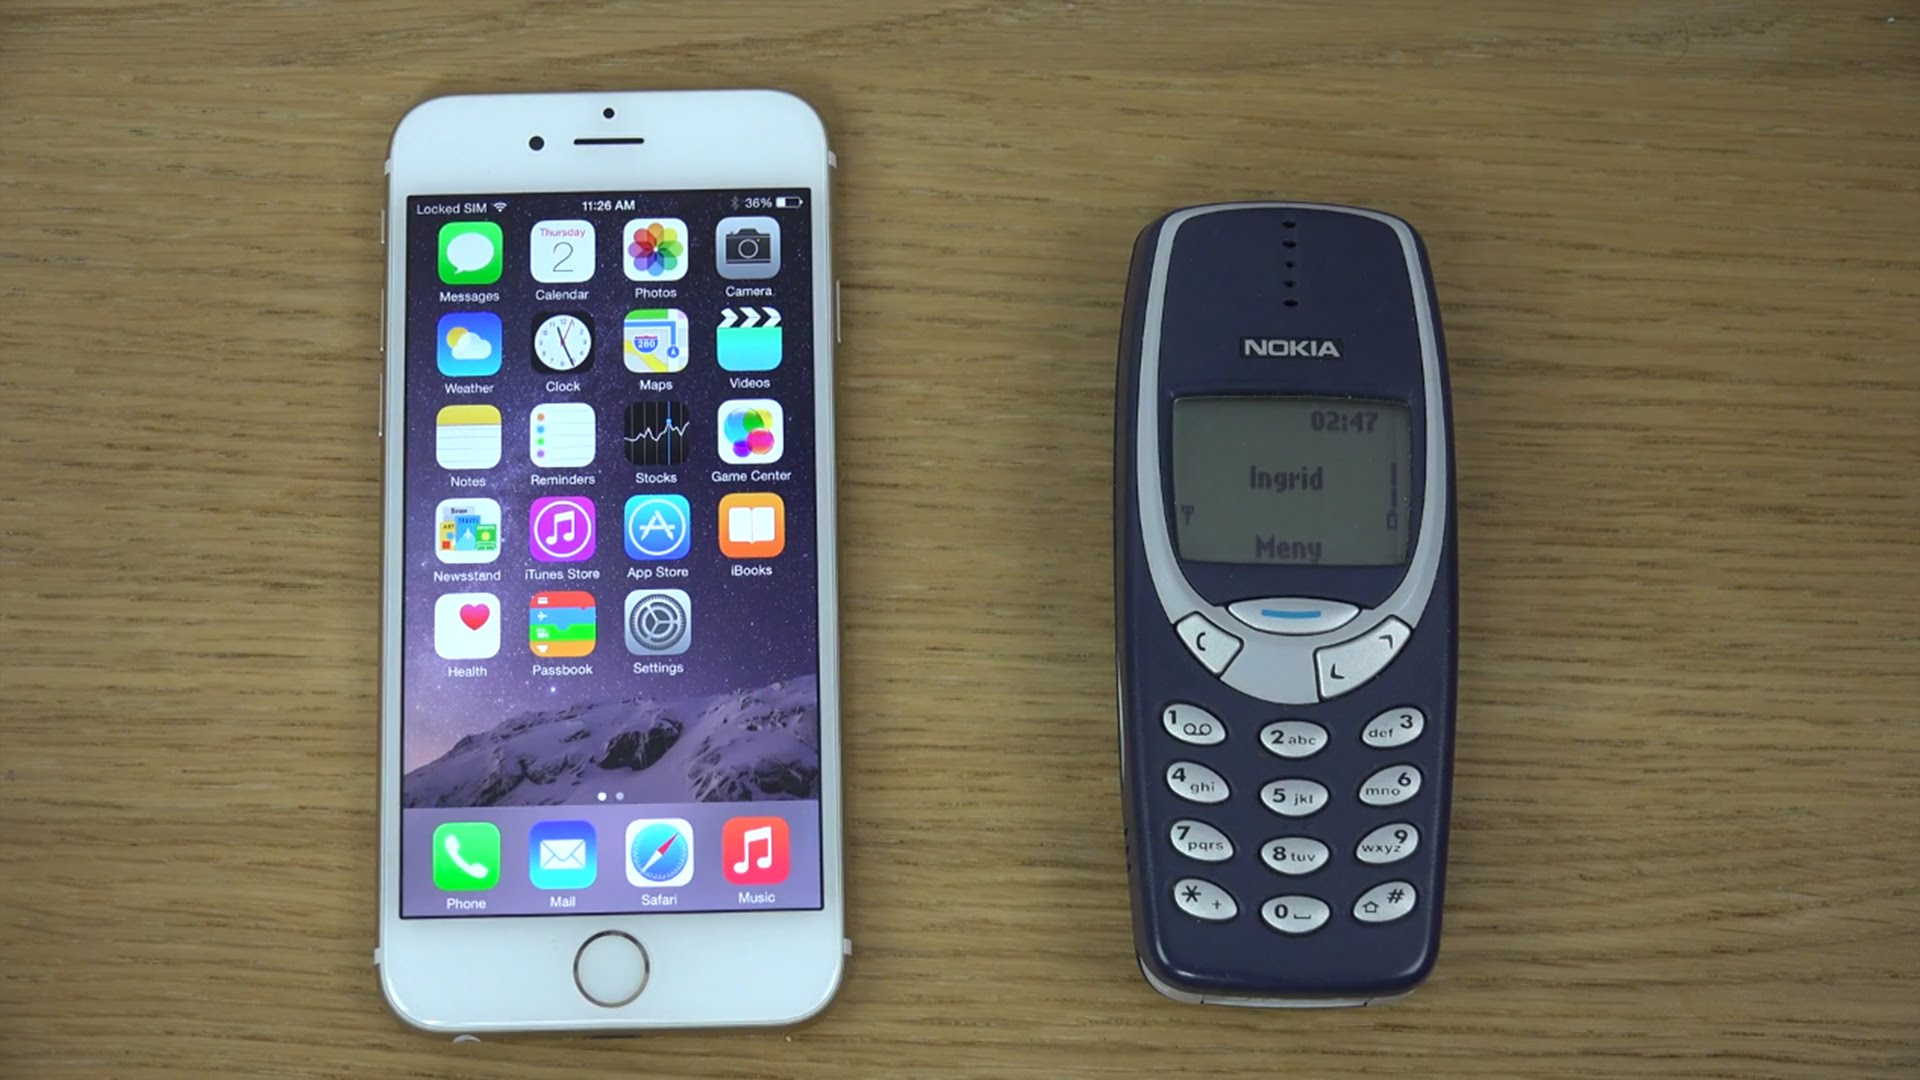 Giờ đây bạn sẽ chọn một chiếc iPhone hay điện thoại Nokia? - Ảnh chụp màn hình YouTube